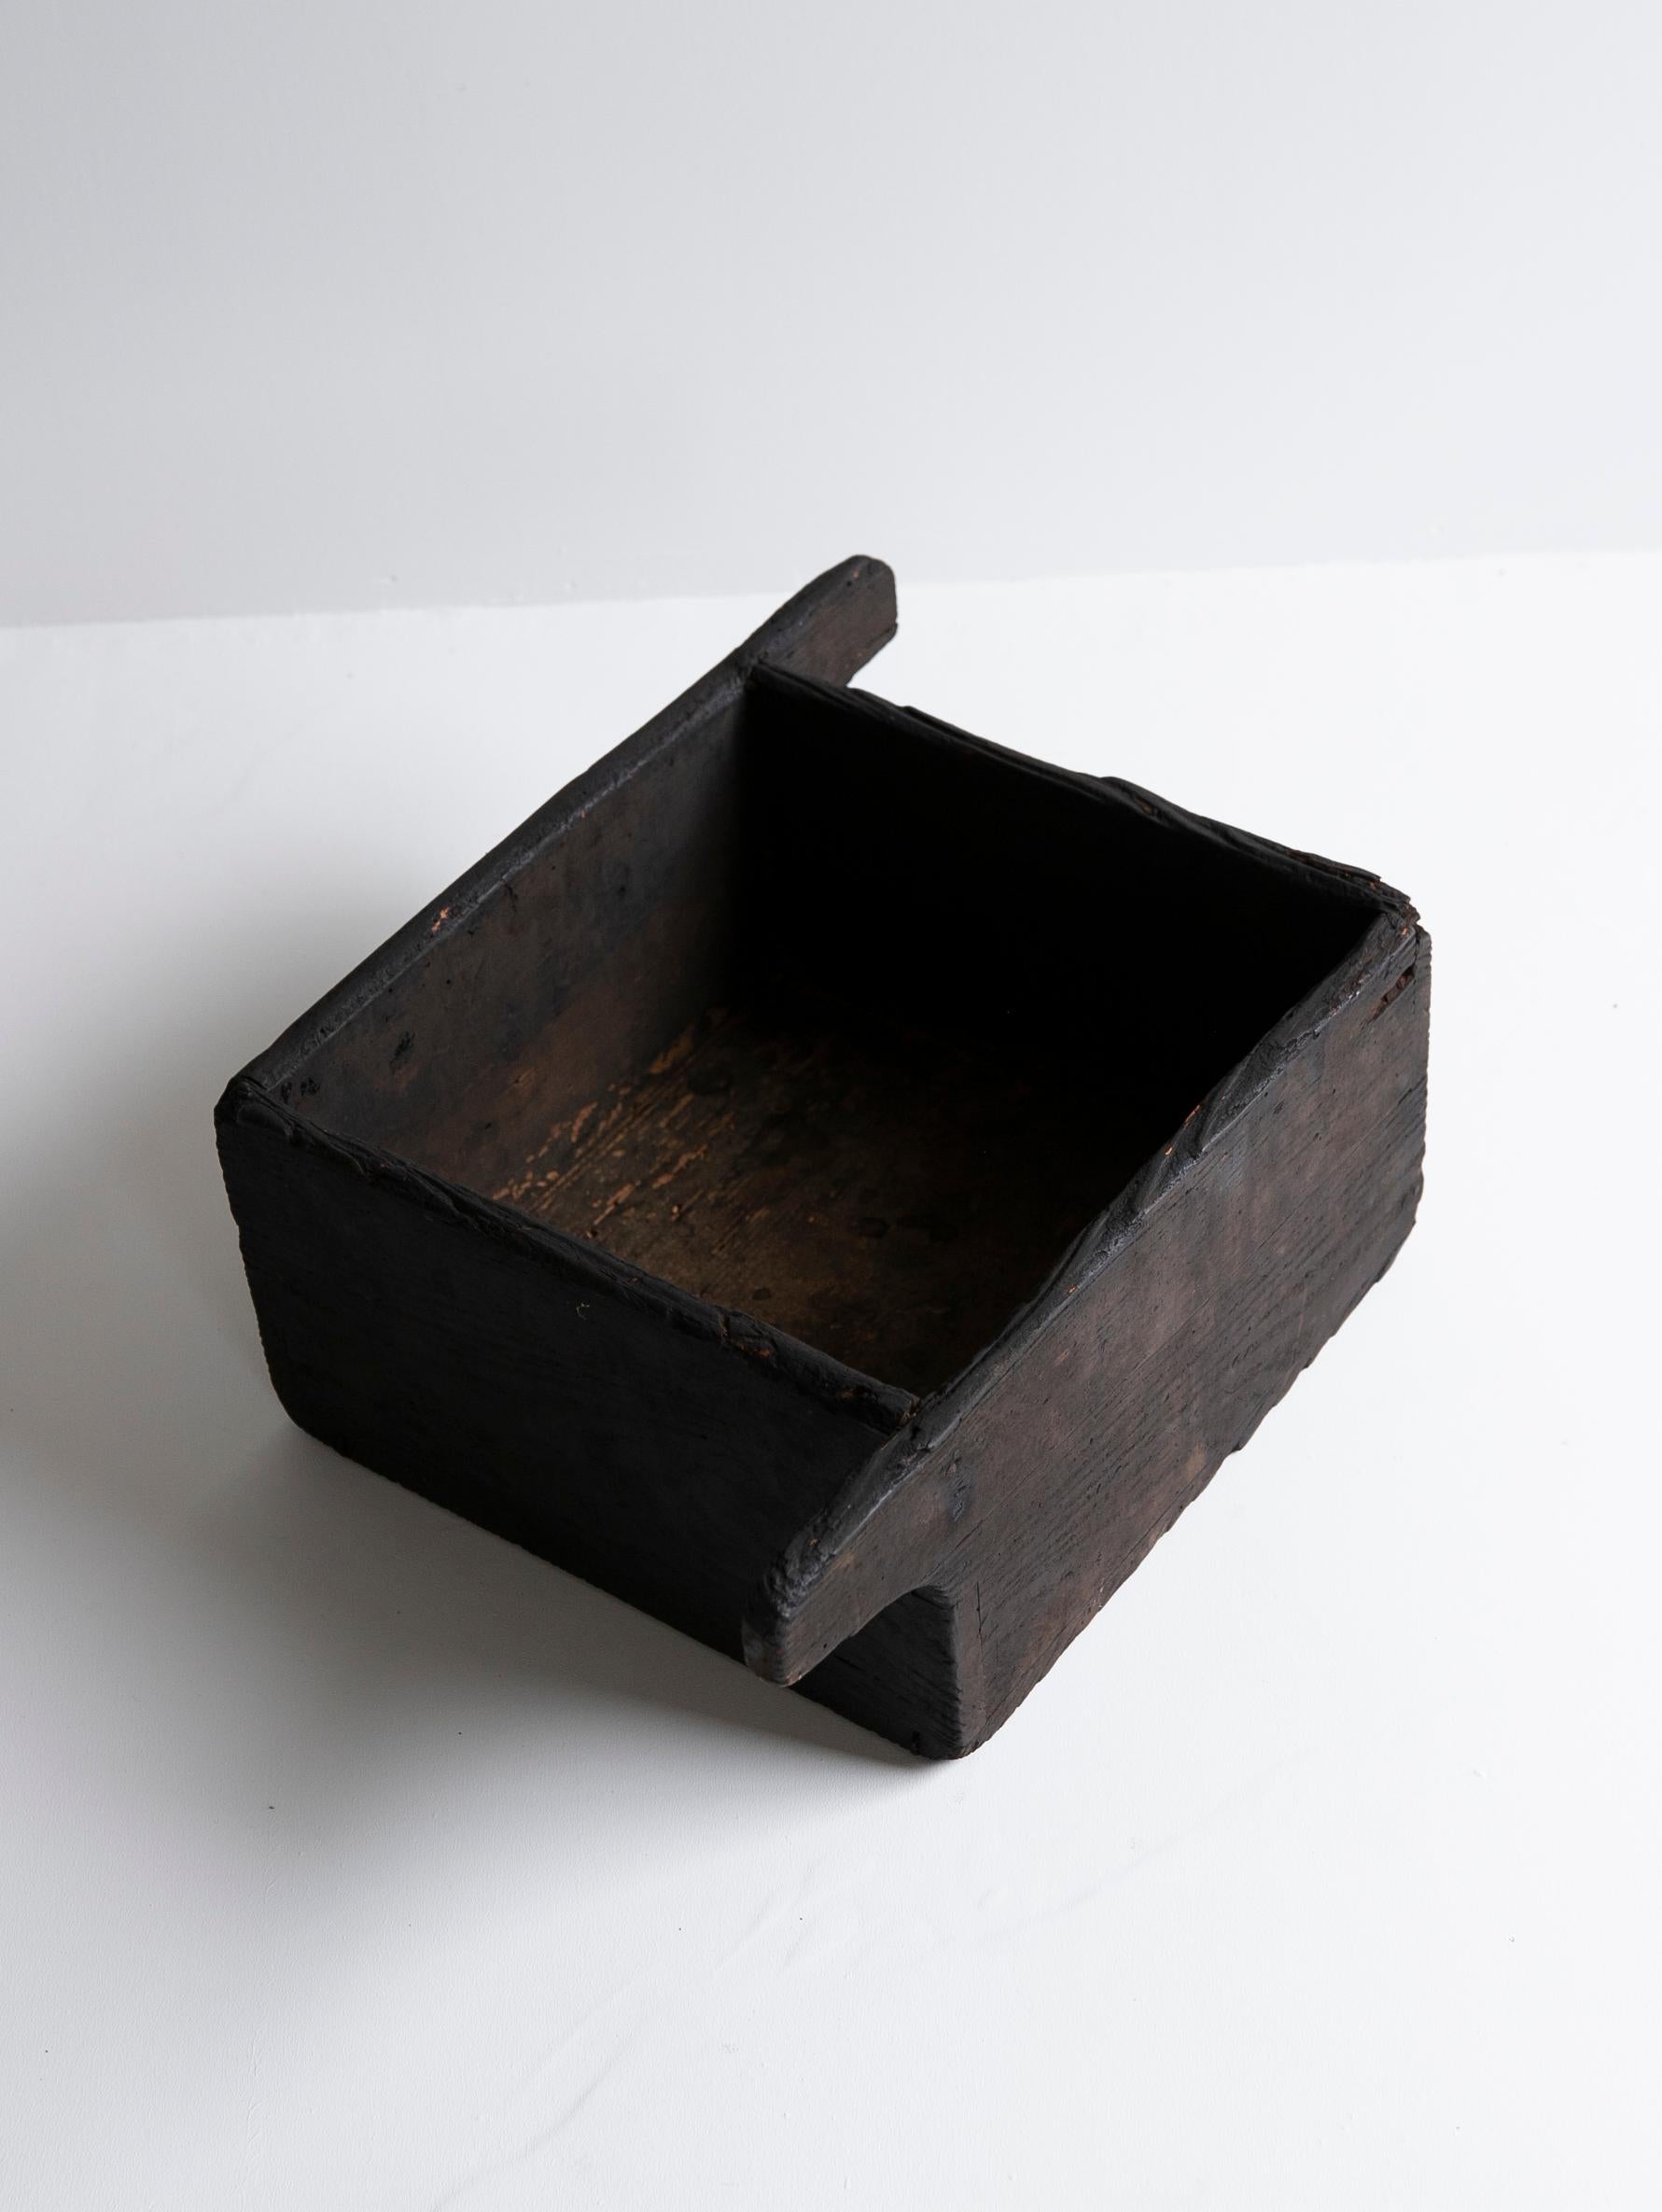 Japanese Antique Wooden Bowl 1860s-1900s/Mingei Wabisabi Primitive Object 1